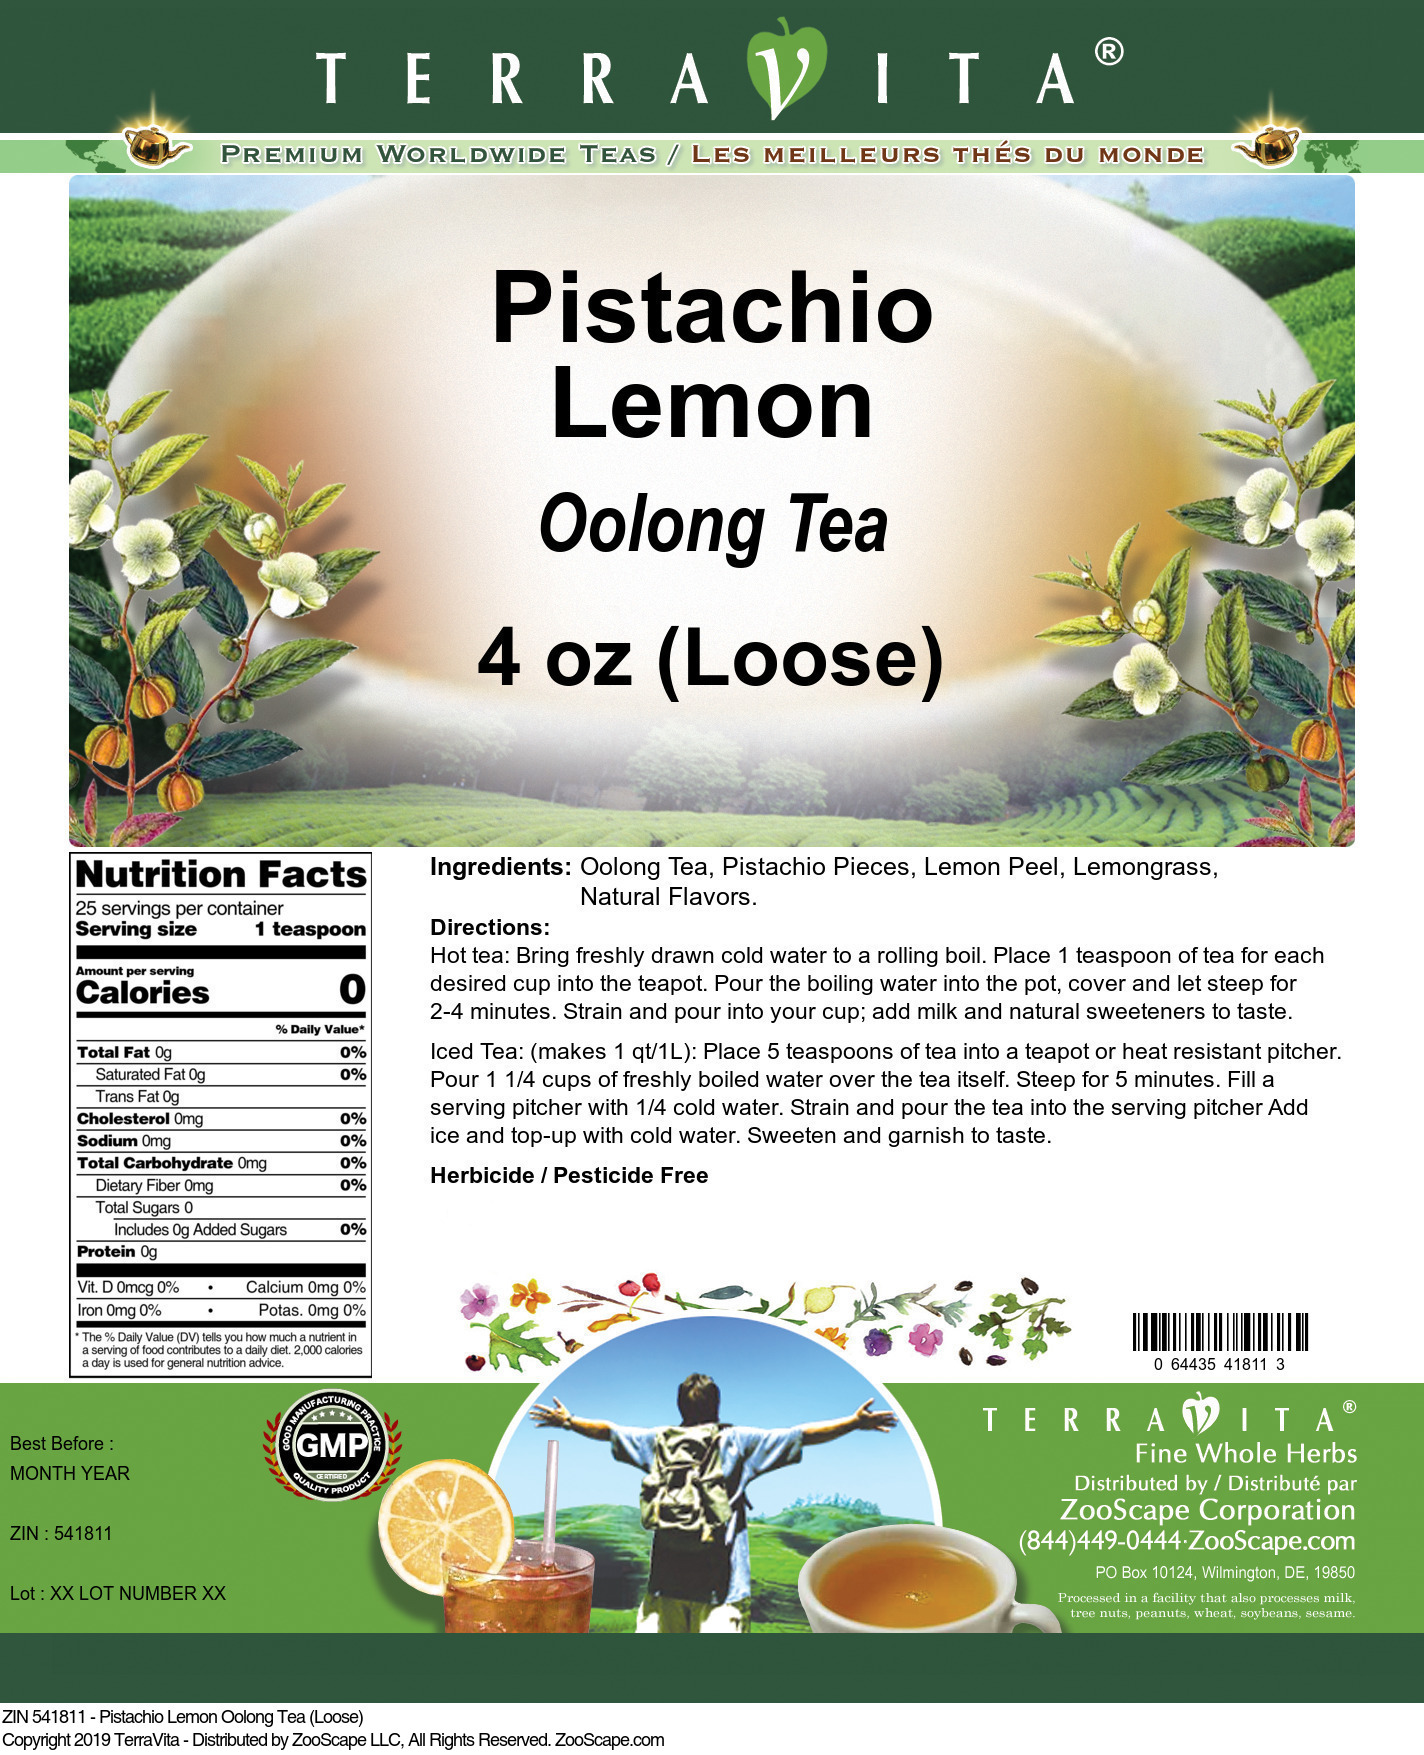 Pistachio Lemon Oolong Tea (Loose) - Label